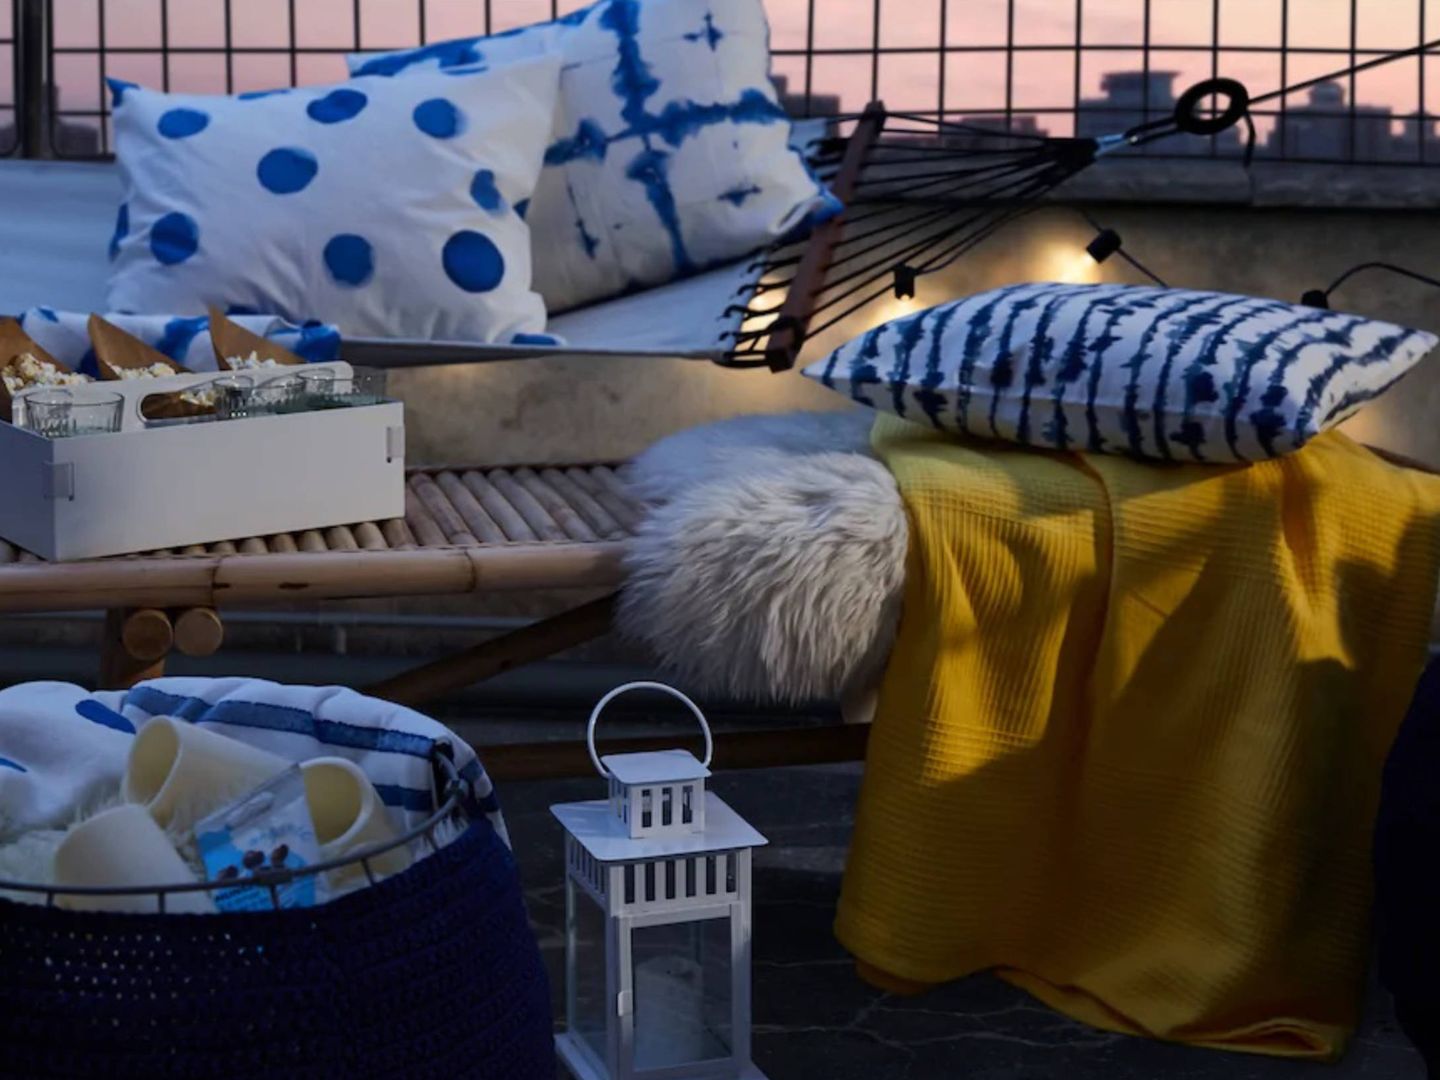 Ikea convierte tu jardín en un cine al aire libre. (Cortesía)